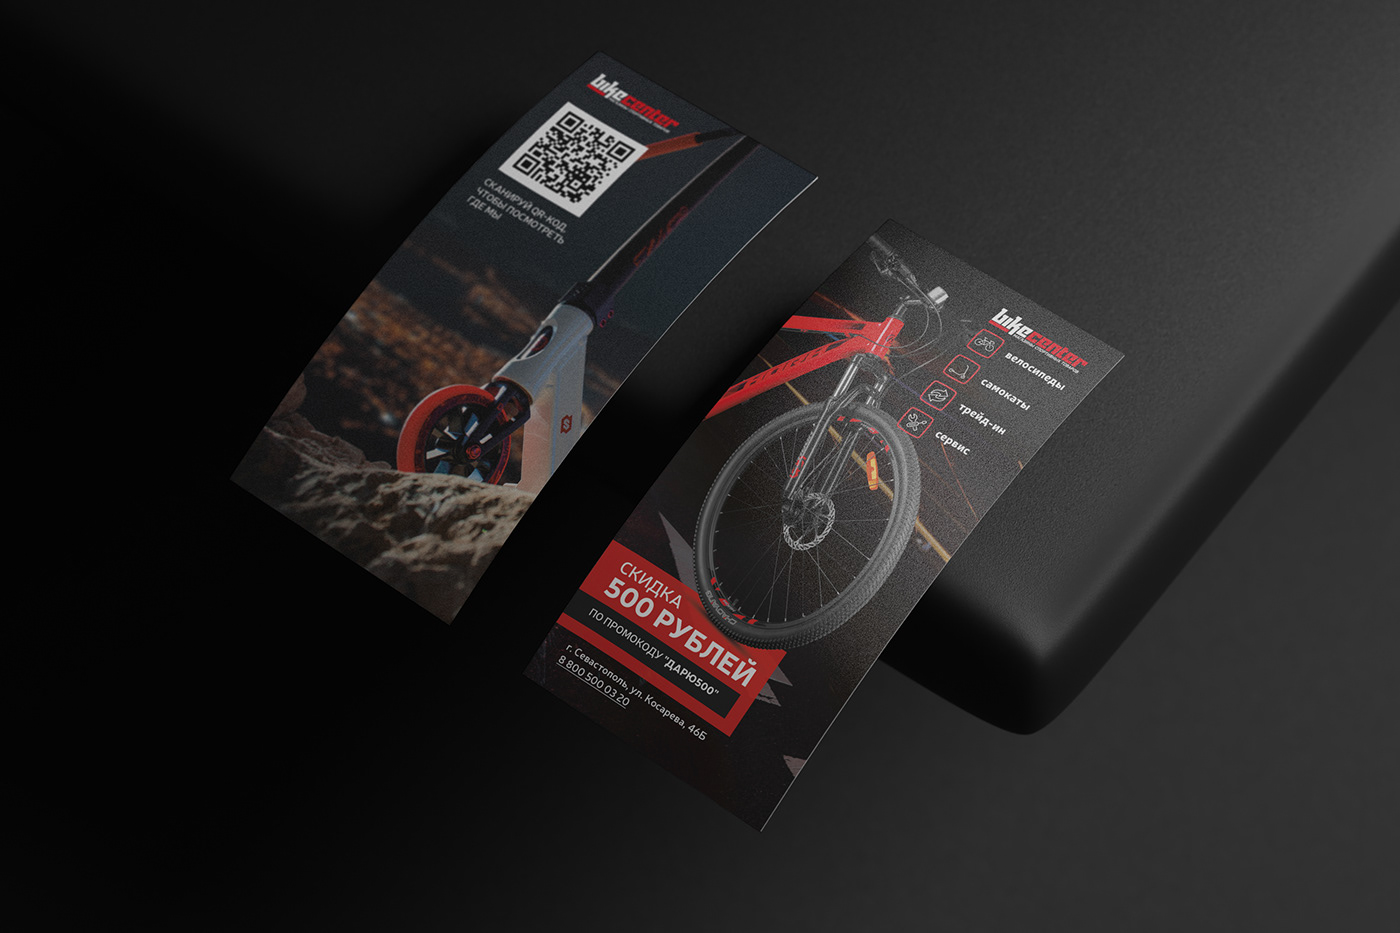 Bicycle flyer poligraphy графический дизайн полиграфия реклама